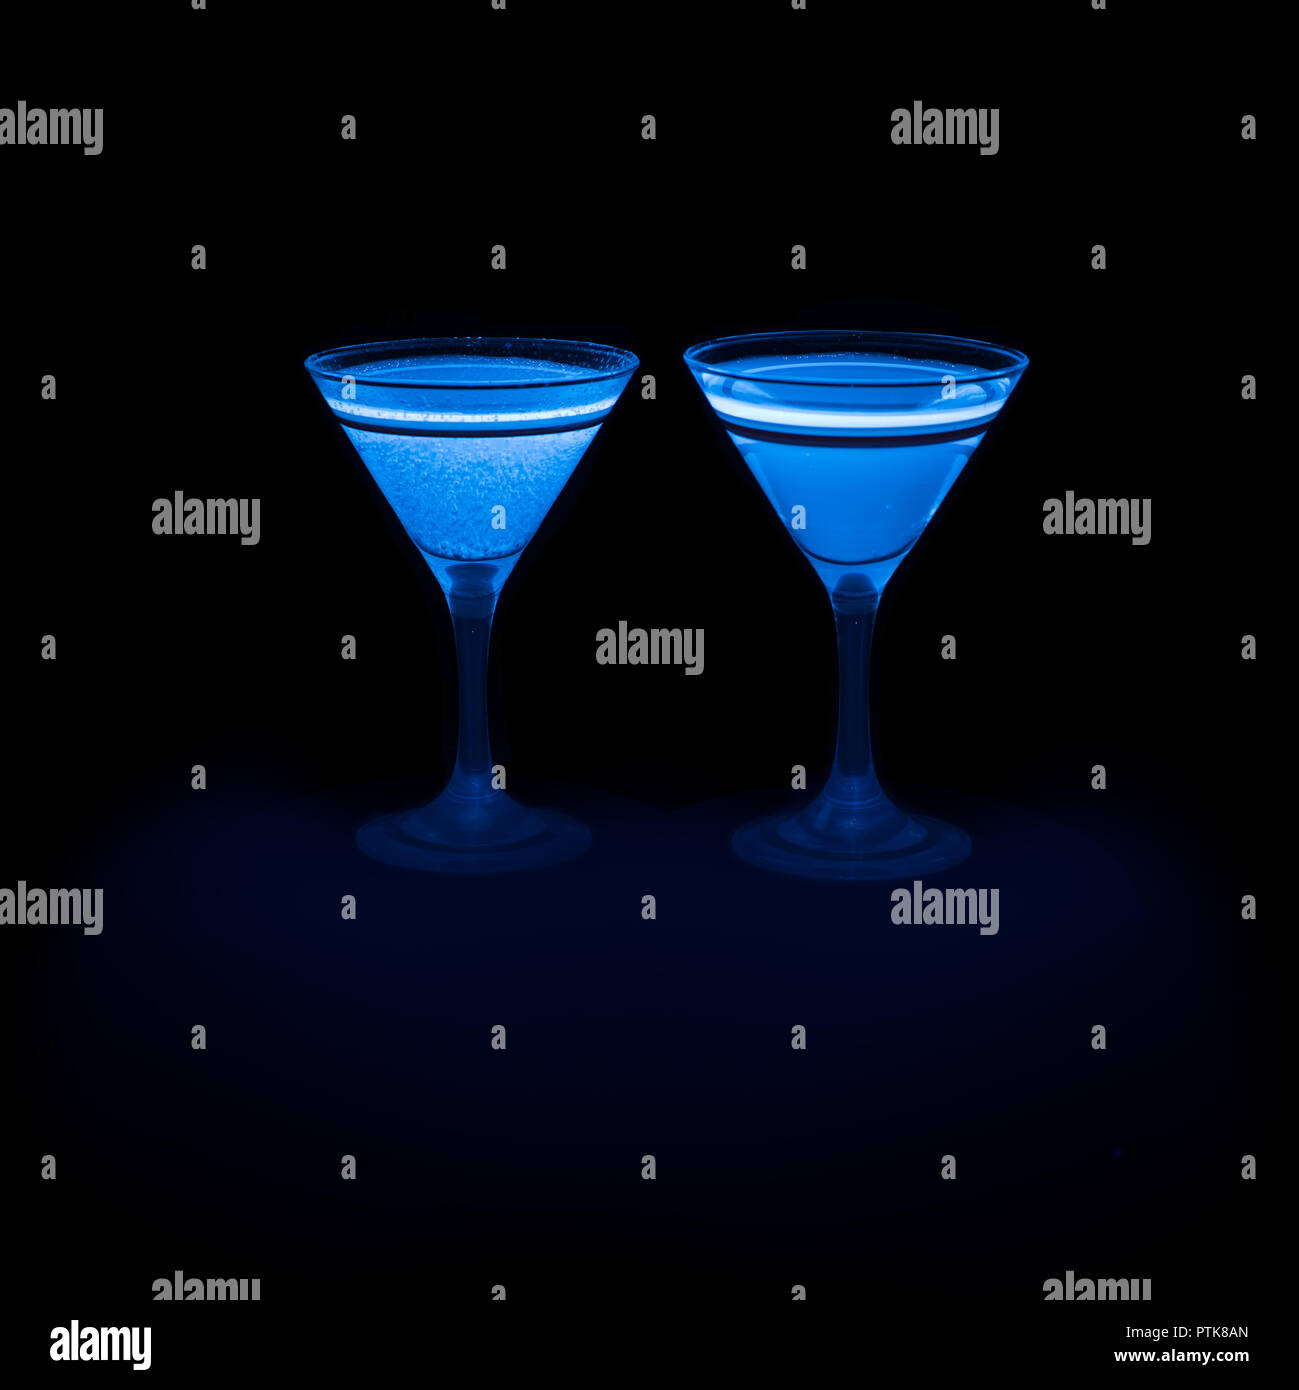 Blu brillante acqua tonica, chinina, come utilizzato nel gin tonic emmits  come luce visibile quando attivato da raggi ultravioletti a luce UV 365 nm  Foto stock - Alamy